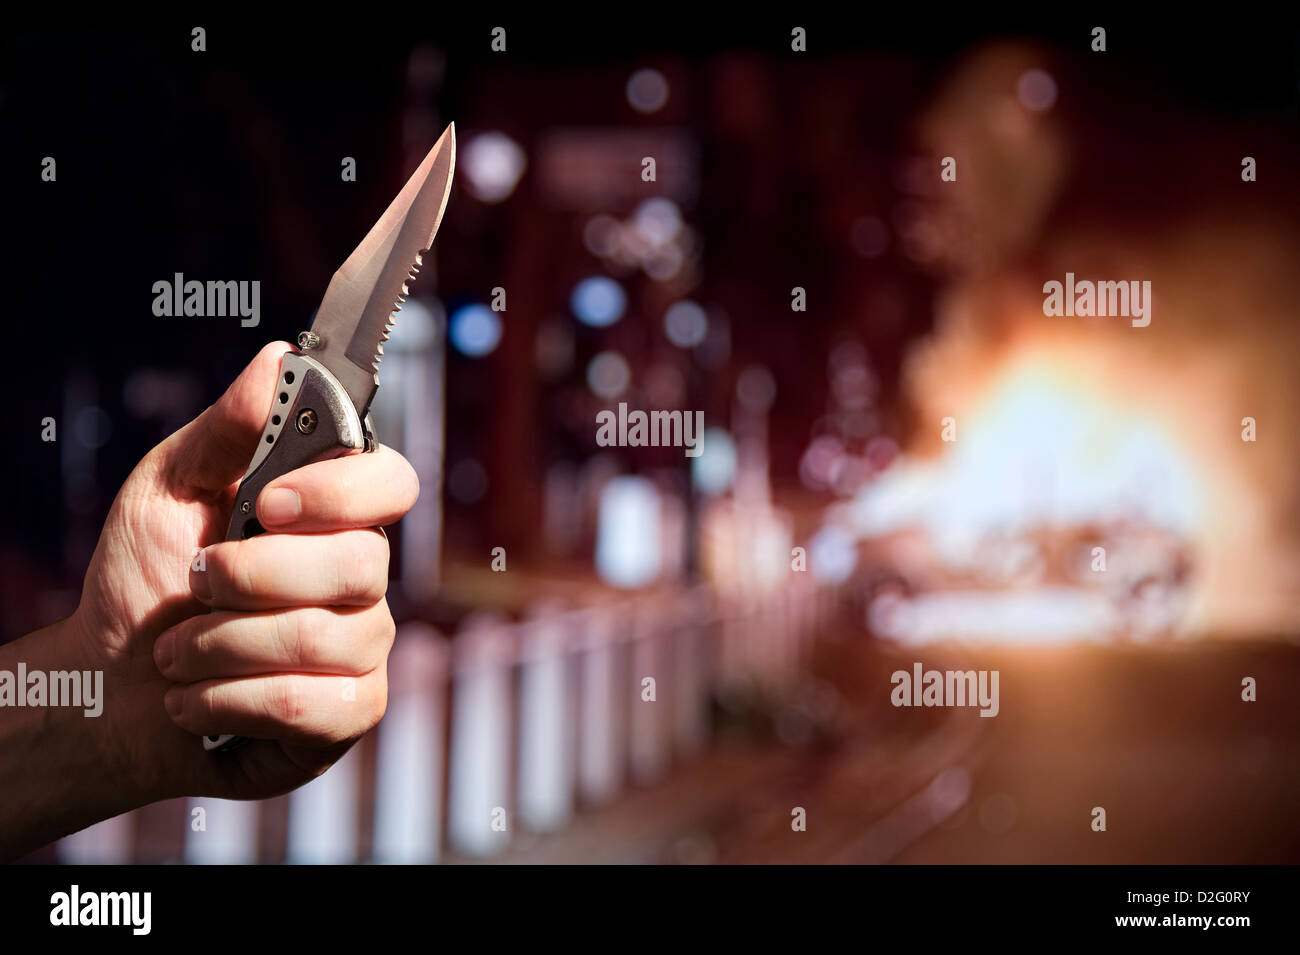 Die straßenkriminalität oder einem Messer Kriminalität - Hand mit einem Messer mit Wellenschliff, während im Hintergrund ein Auto brennt, Großbritannien Stockfoto